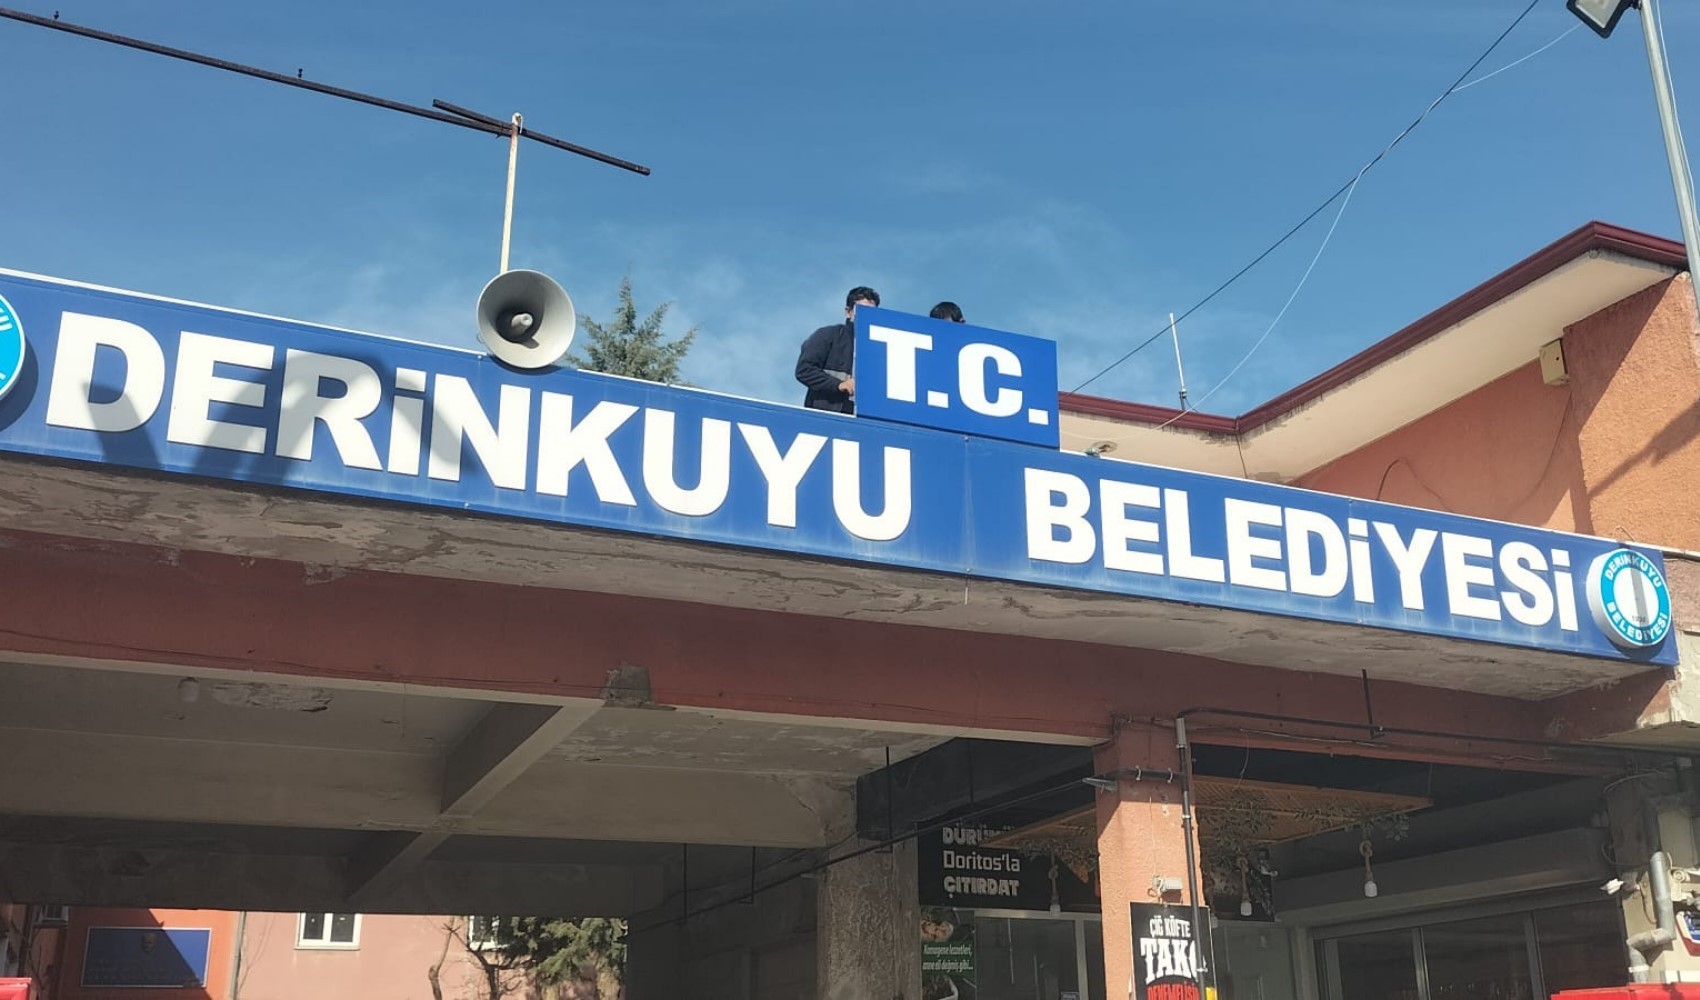 AKP'den CHP'ye geçen bazı ilçelerde tabelalara T.C. ibaresi eklendi